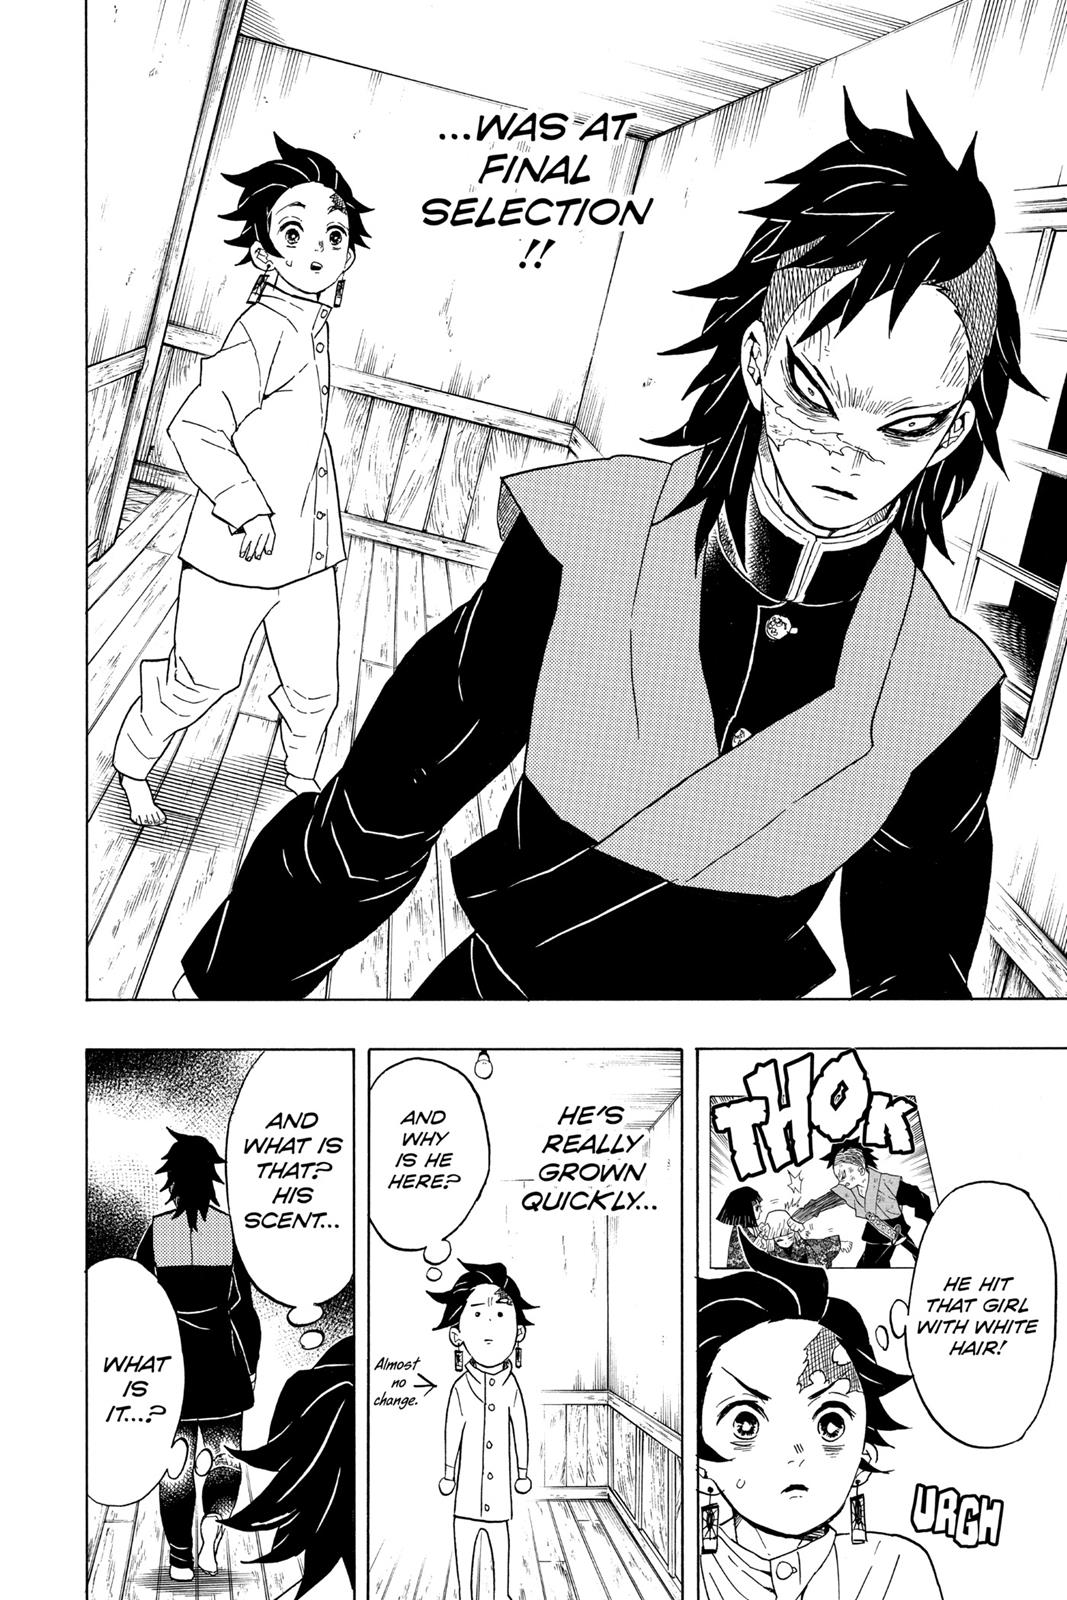 Demon Slayer Manga Manga Chapter - 53 - image 9